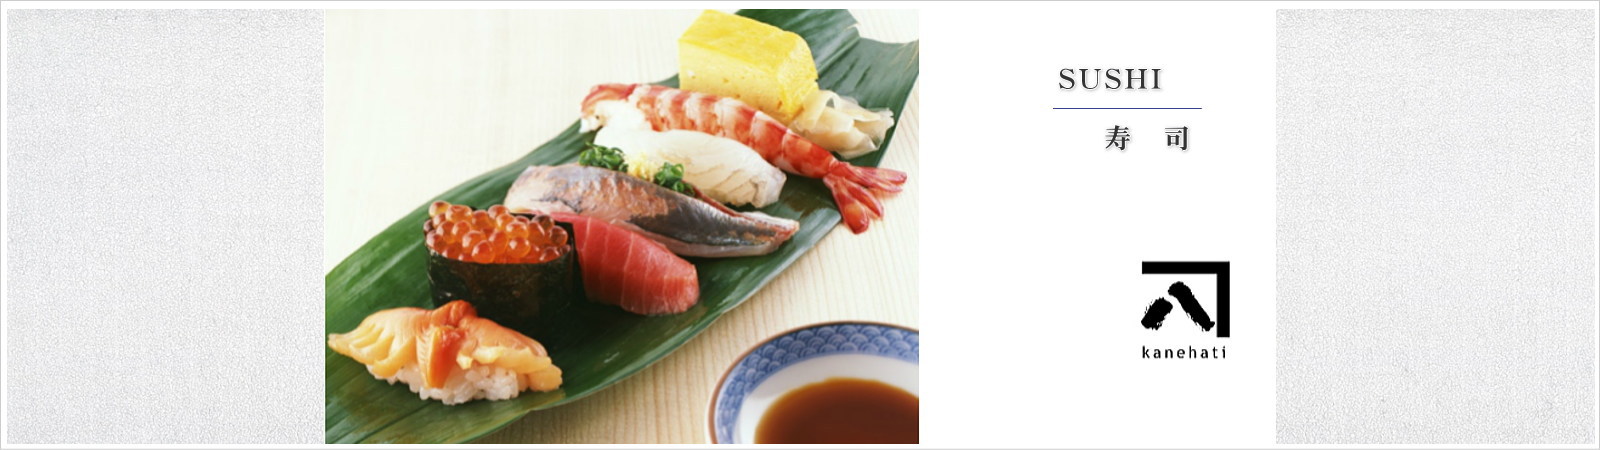 カネハチ はお寿司・天ぷら・お弁当を中心としたお惣菜の製造販売会社です。